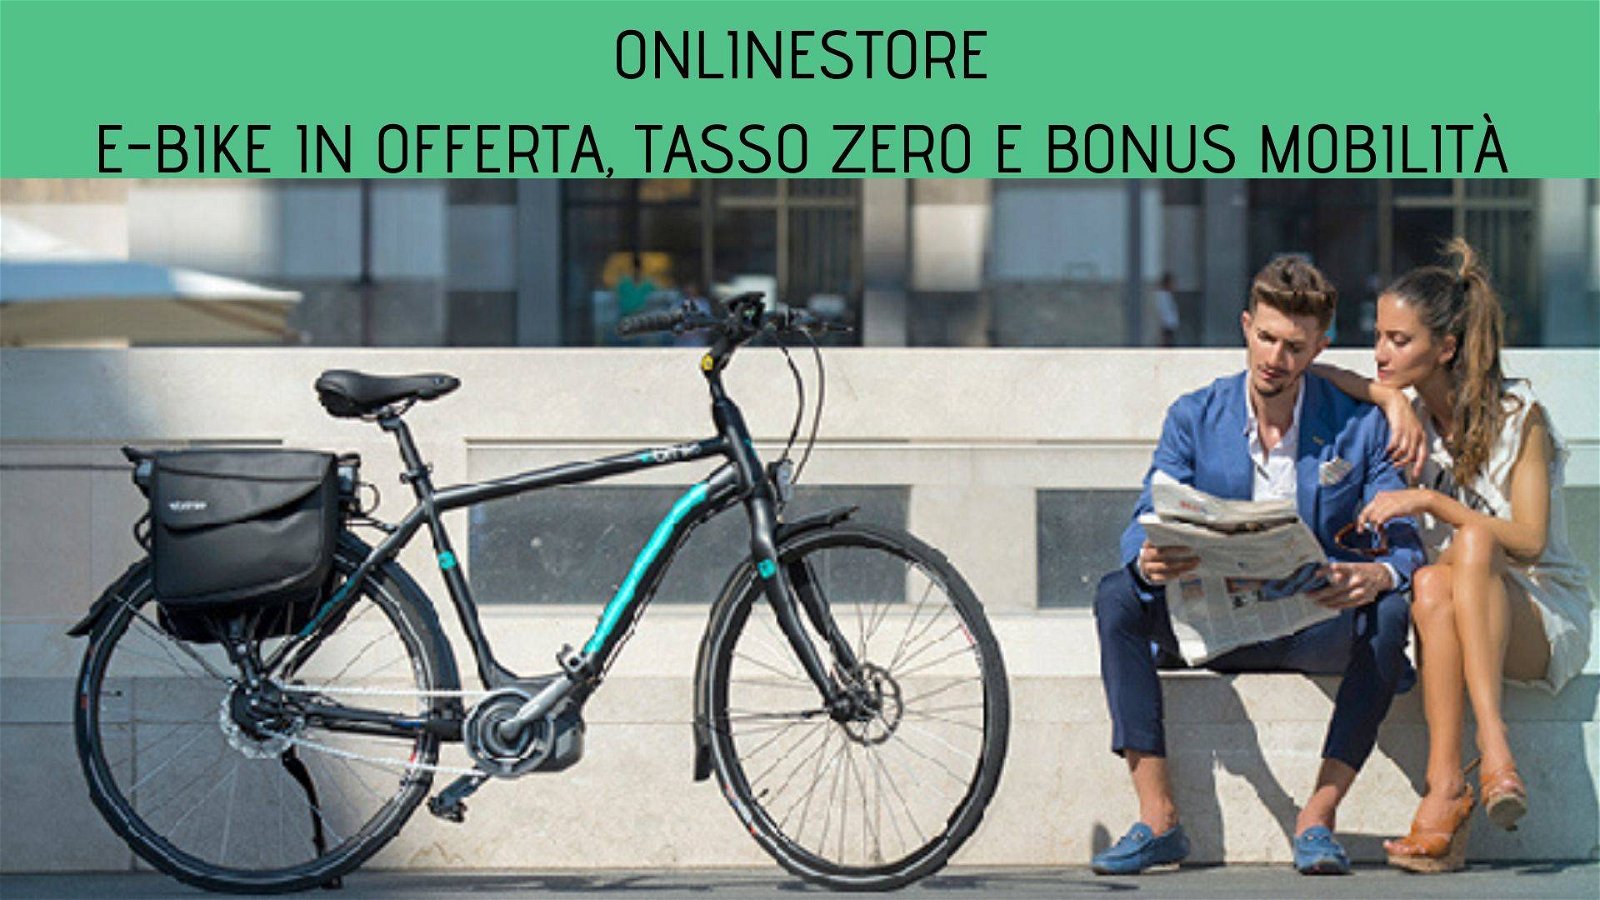 Immagine di E-bike in offerta, tasso zero e bonus mobilità su Onlinestore